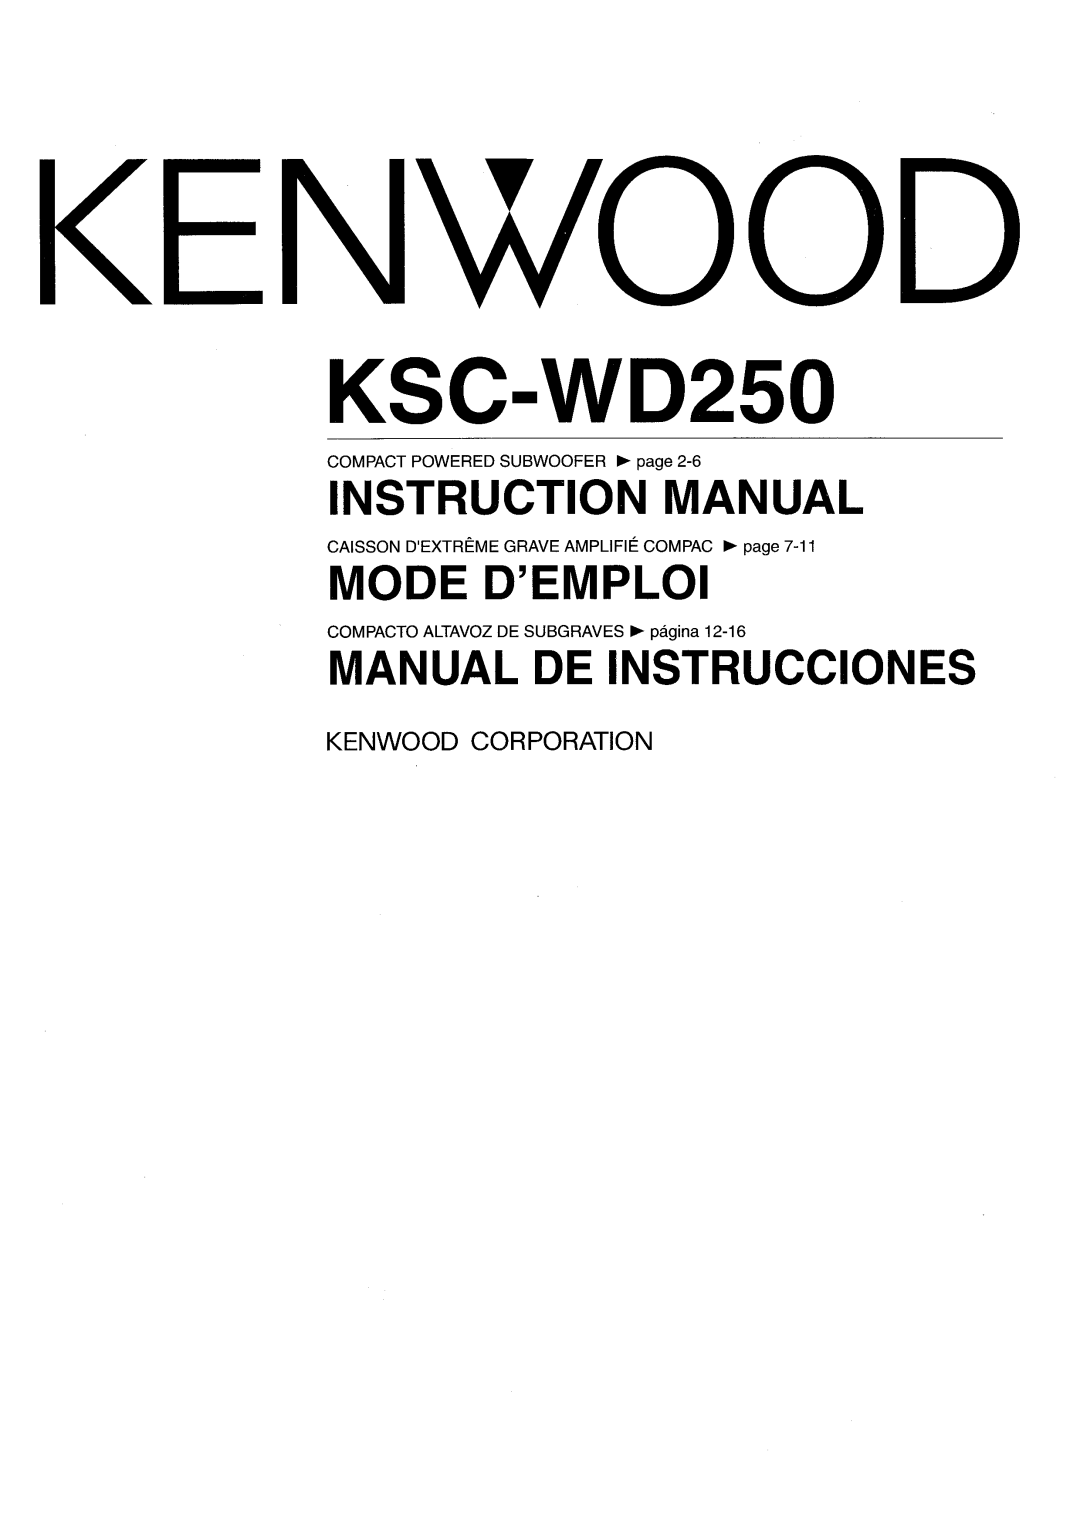 Kenwood KSC-WD250 manual 